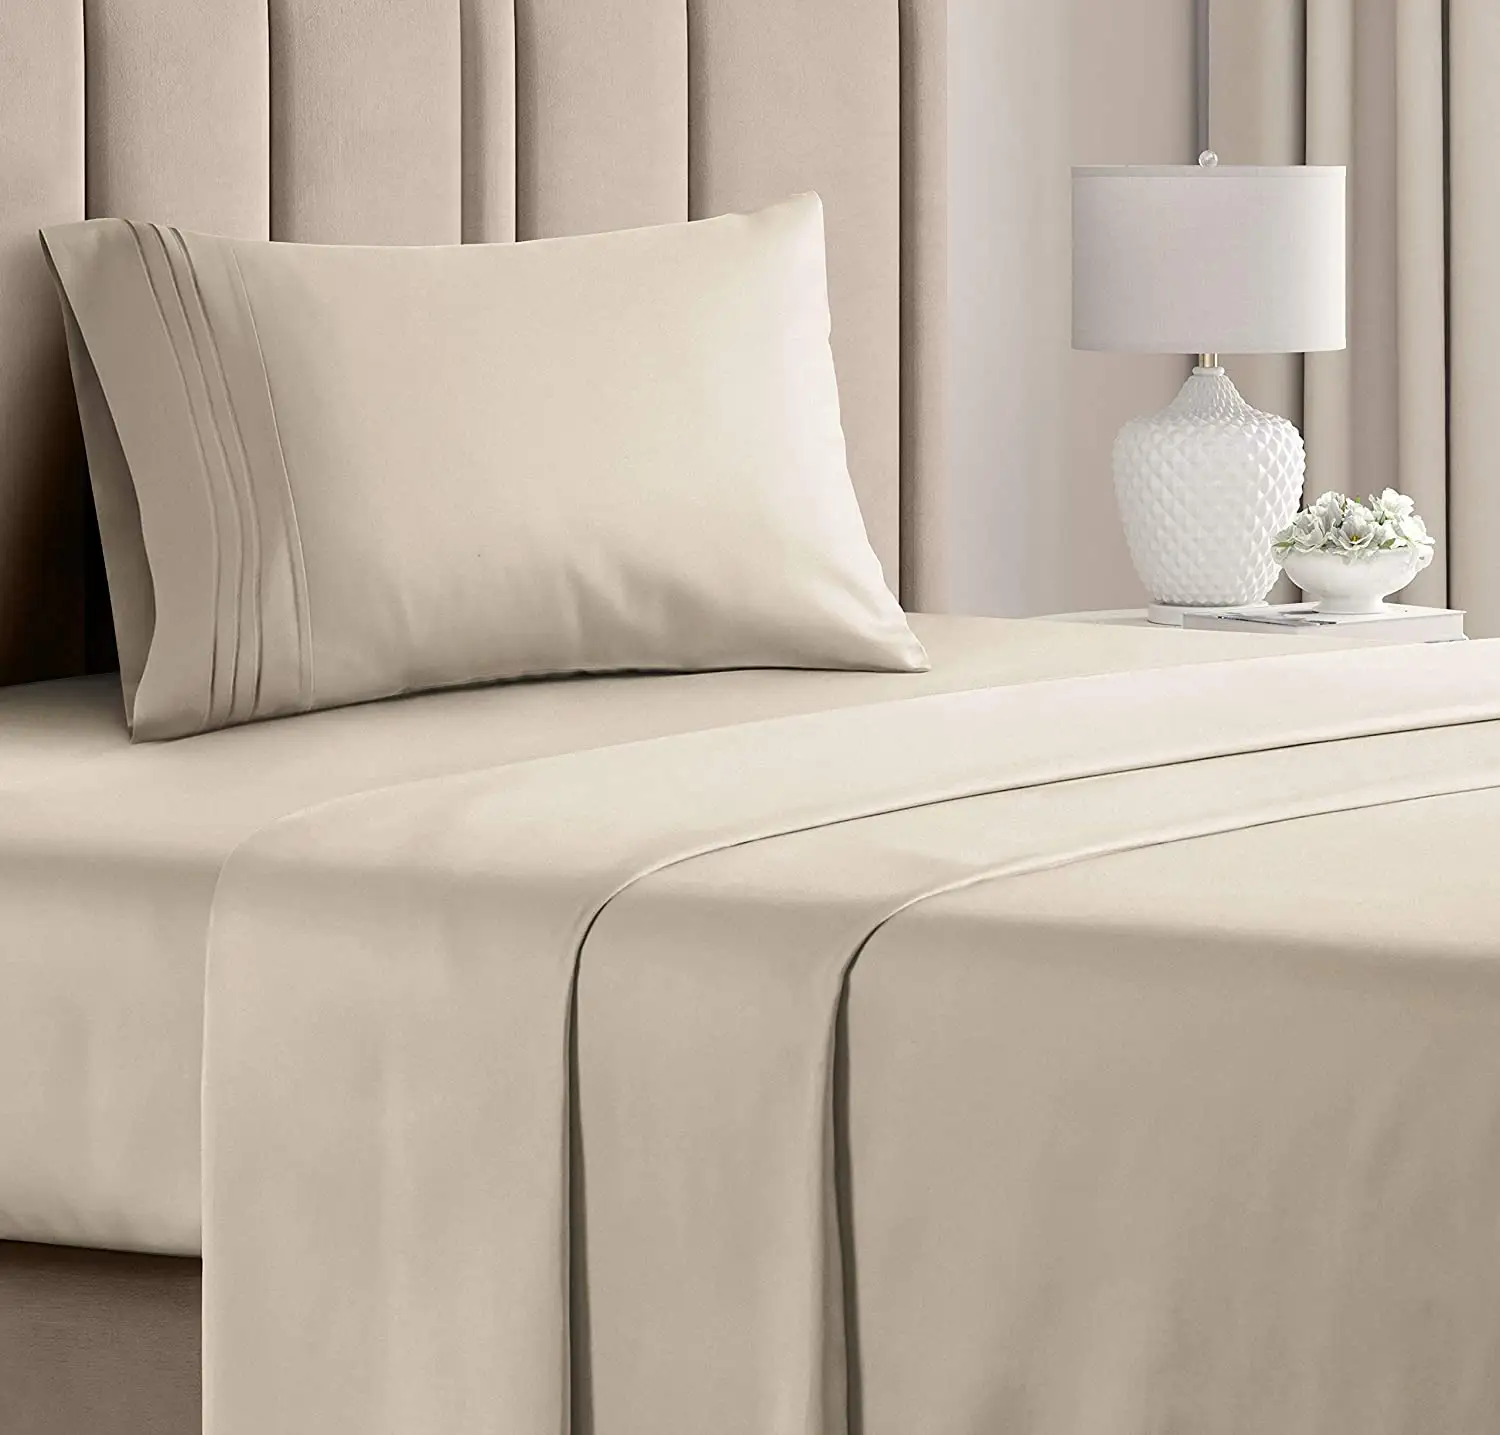 カスタム1000スレッドカウント綿100% 4個ベッドシーツホテルデザイン寝具ベッドOEMODM新しいデザインベッドシーツ